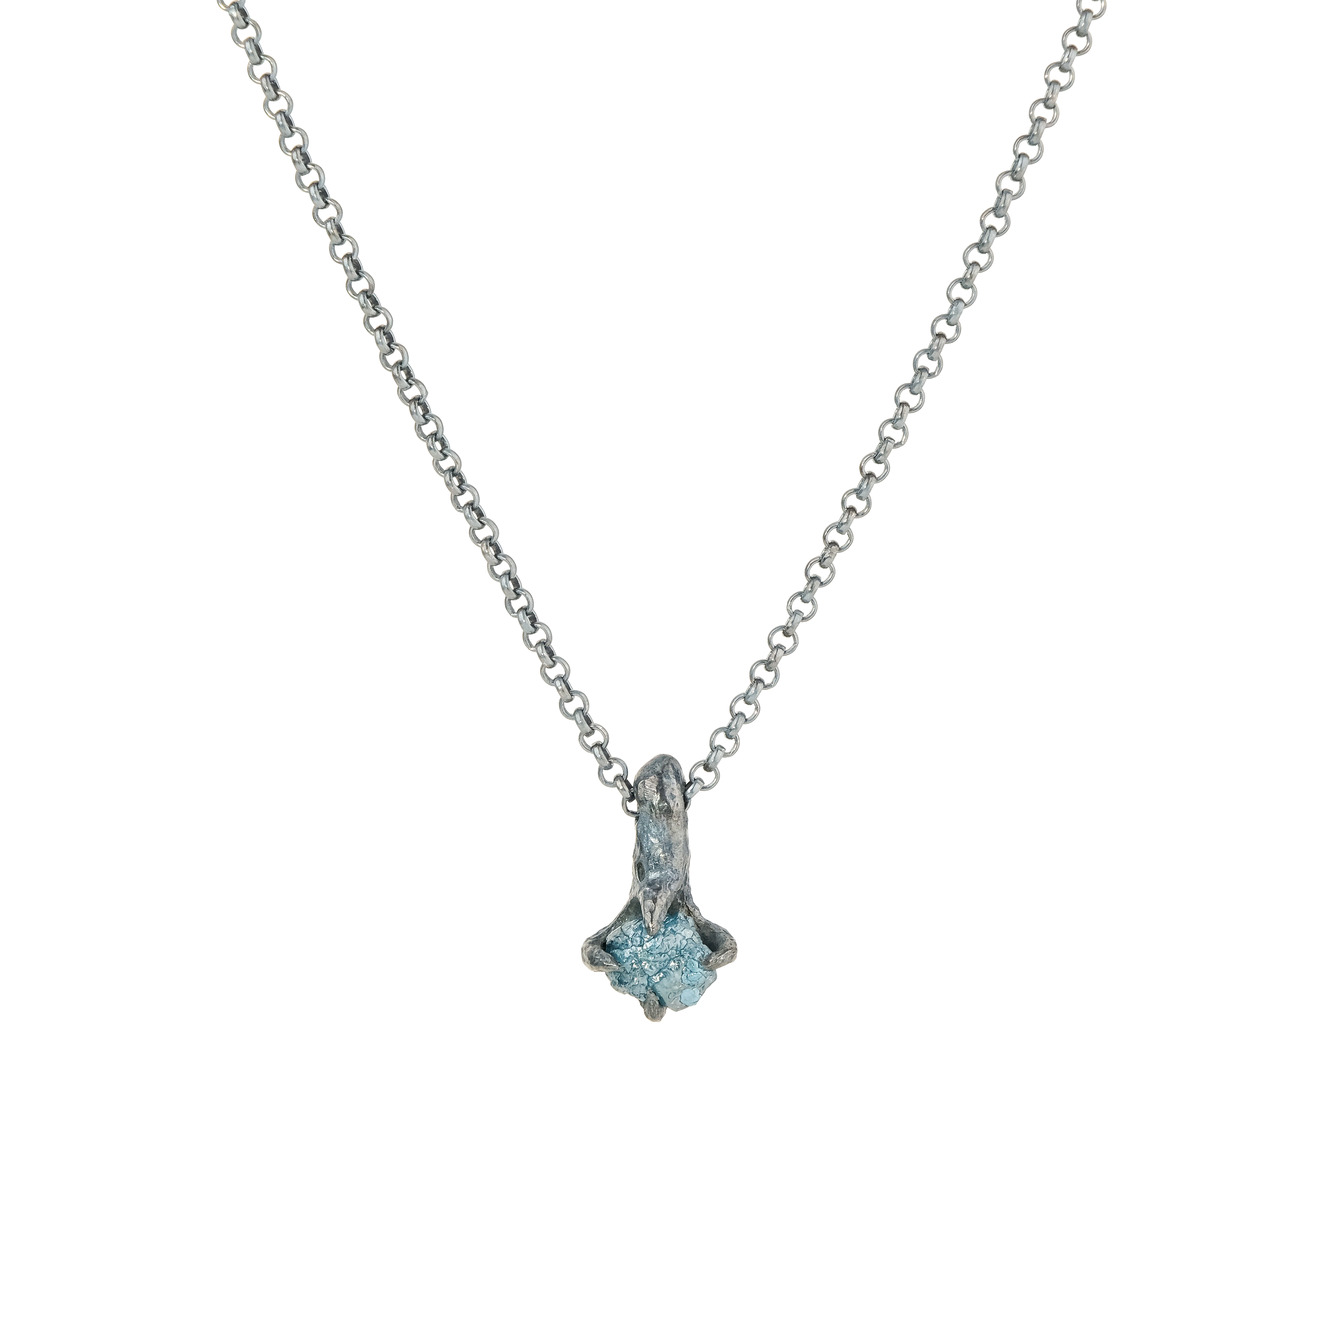 Kintsugi Jewelry Кулон Patience из серебра с кристаллом кварца брошь из серебра с кристаллом